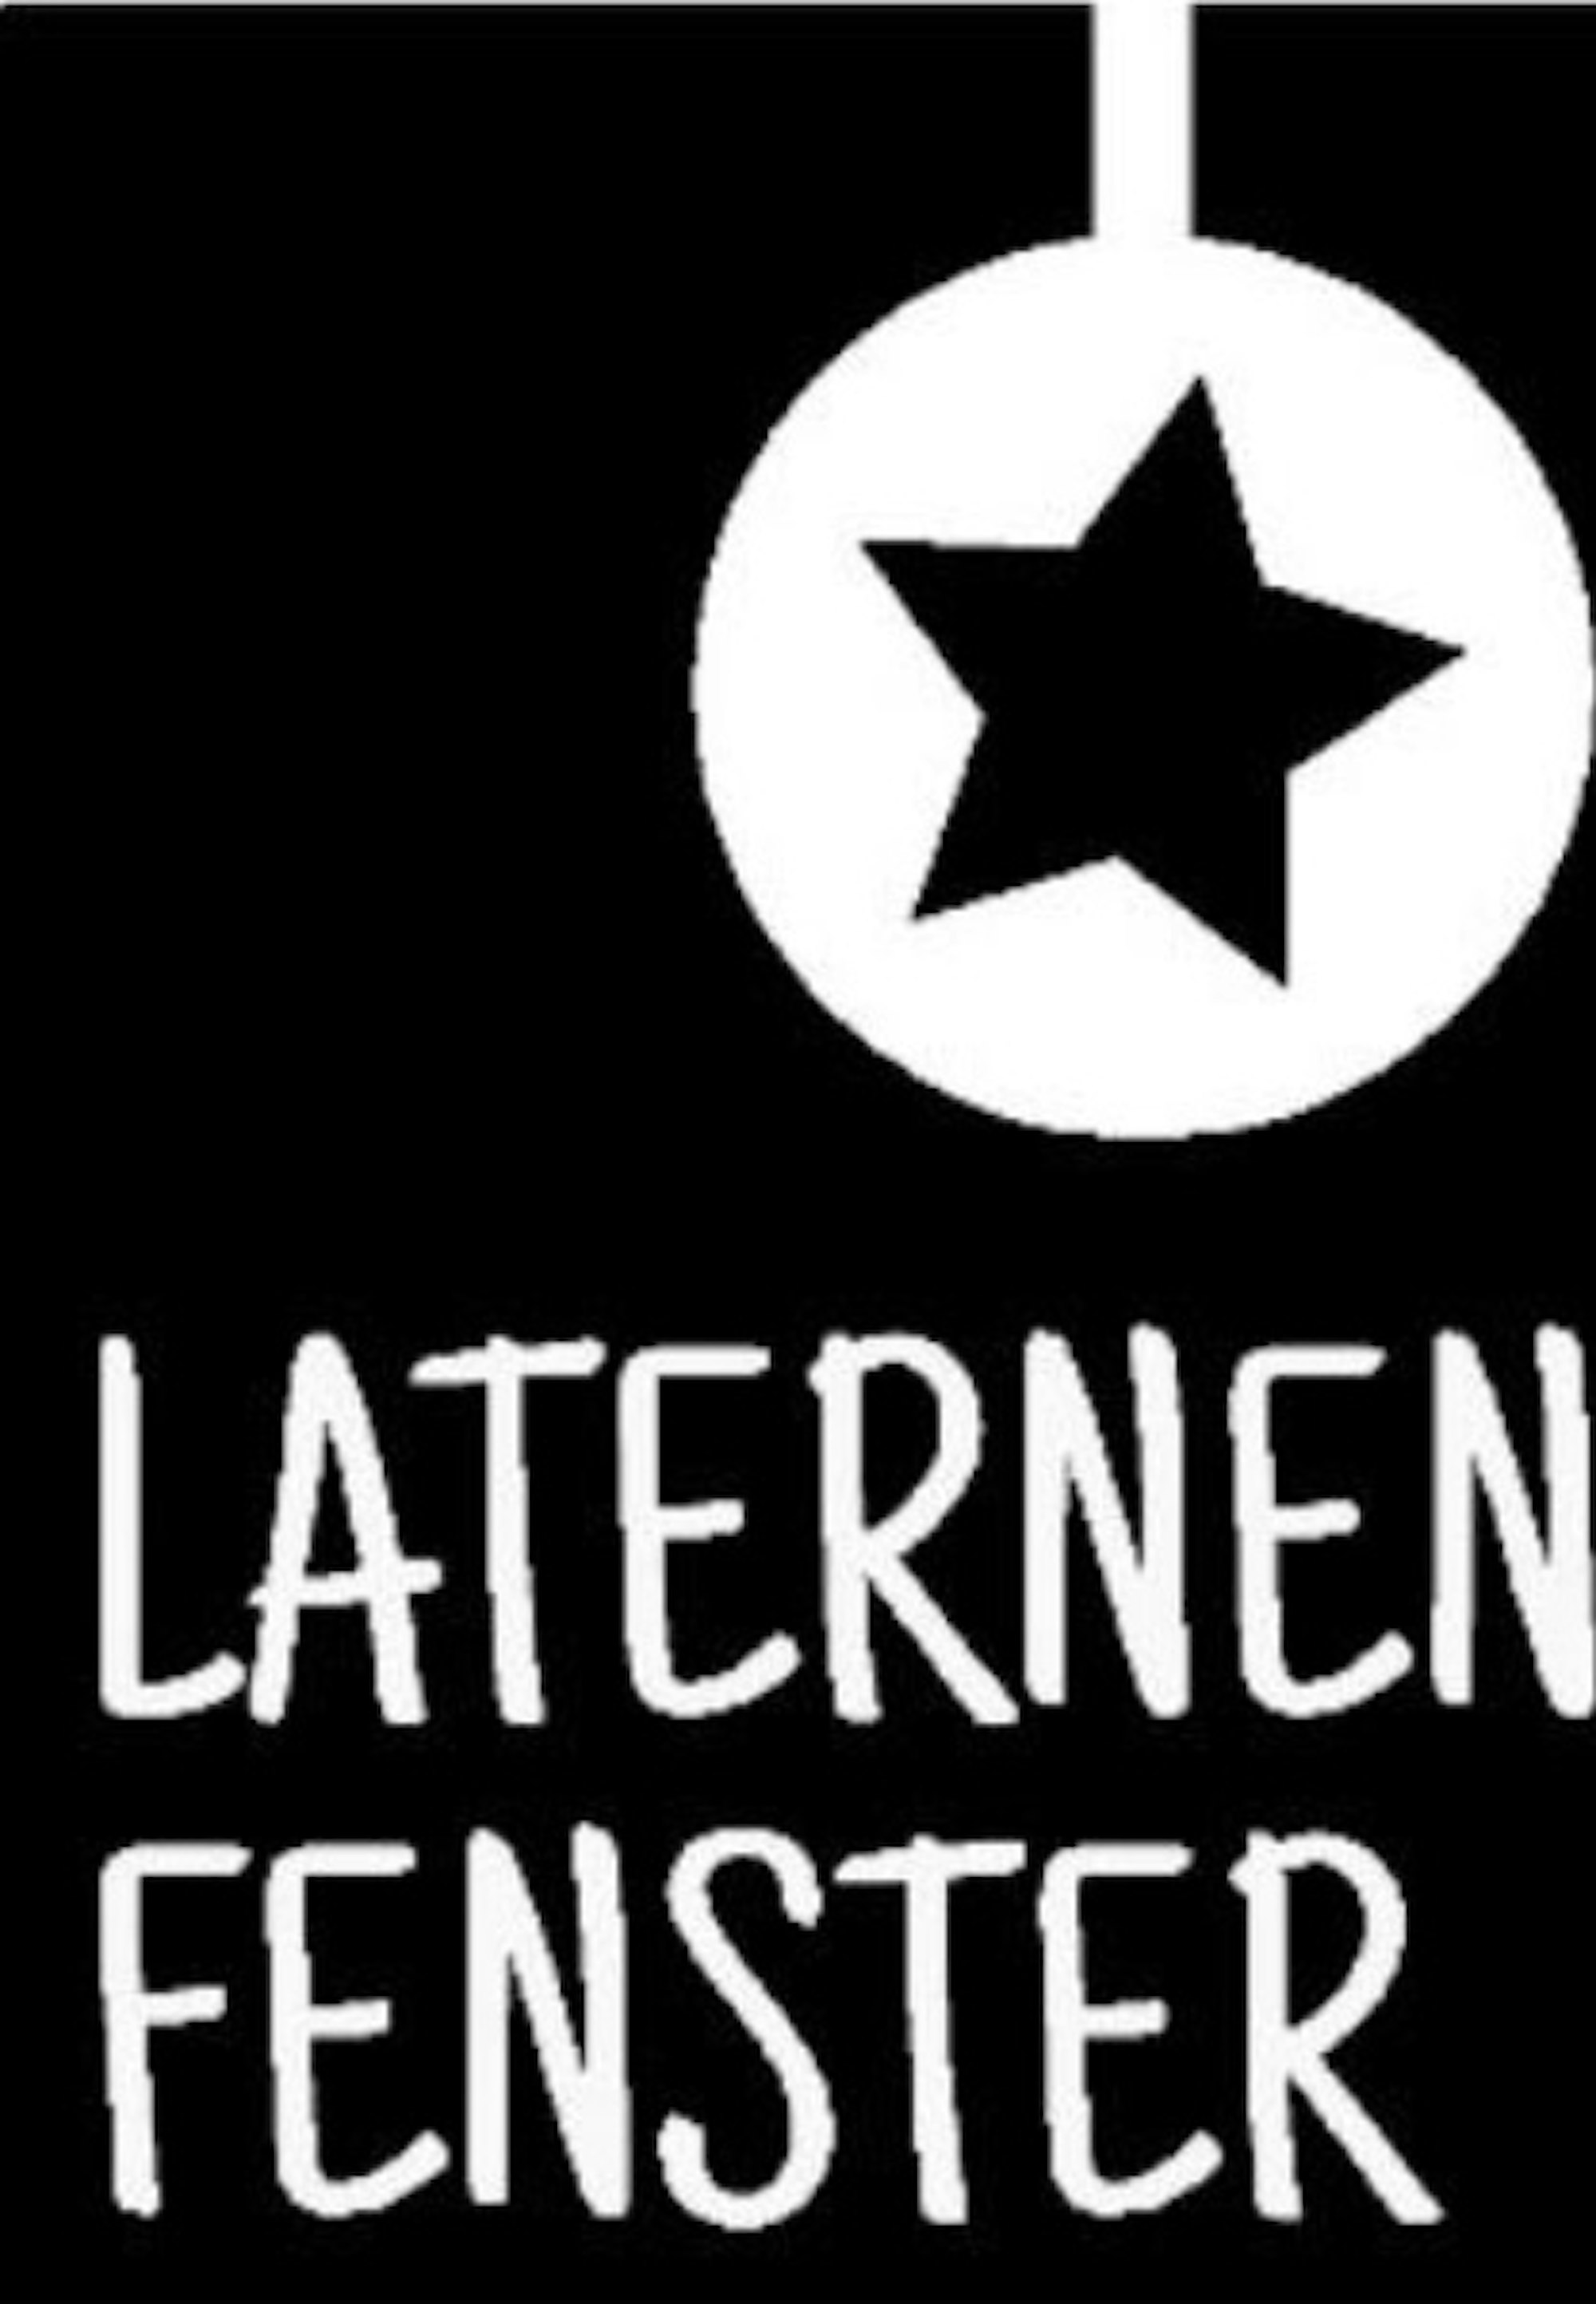 logo_laternen_fenster